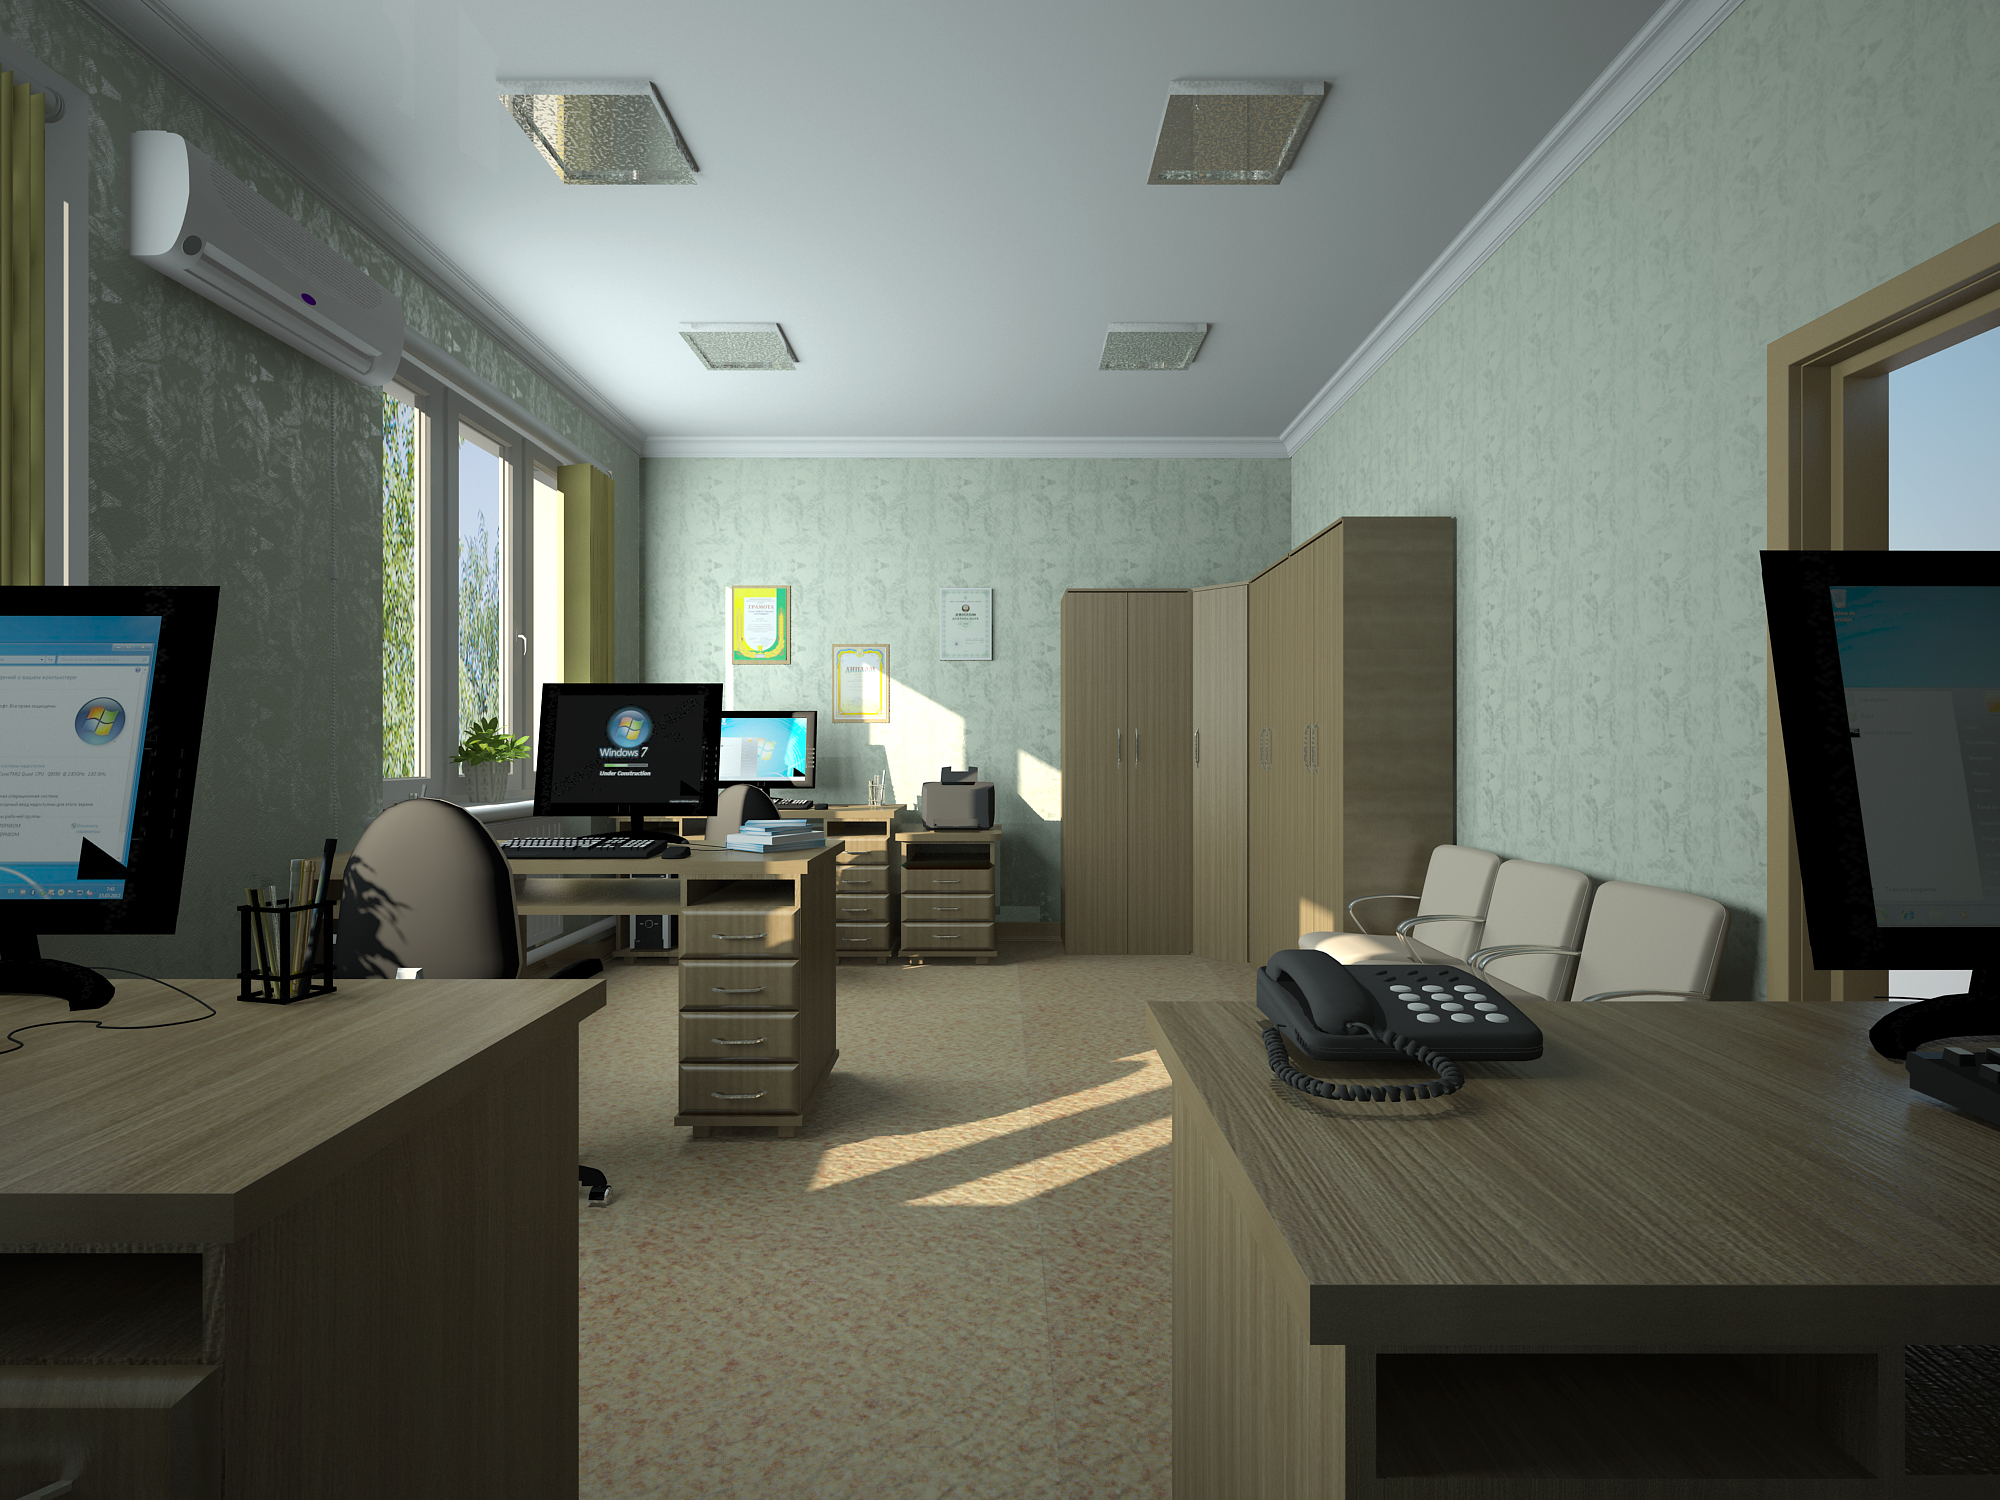 Slavyansk ofisi in 3d max vray 3.0 resim